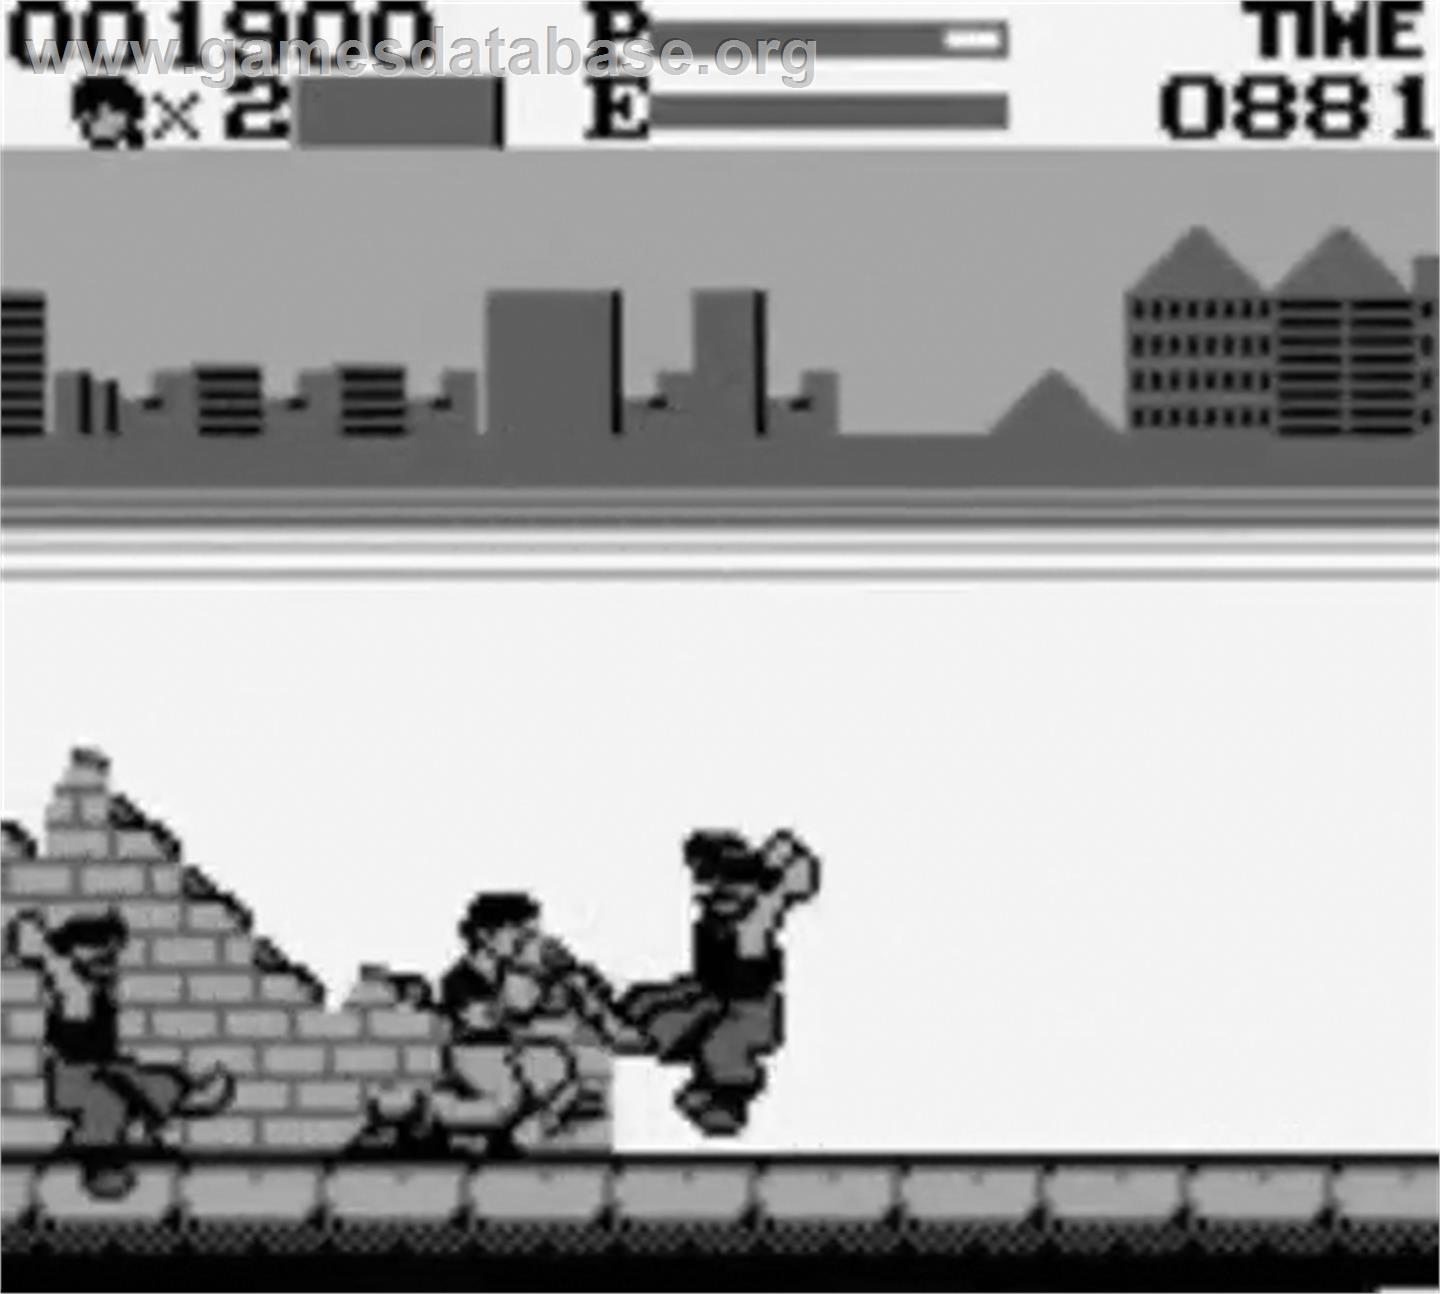 Kung-Fu Master - Nintendo Game Boy - Artwork - In Game